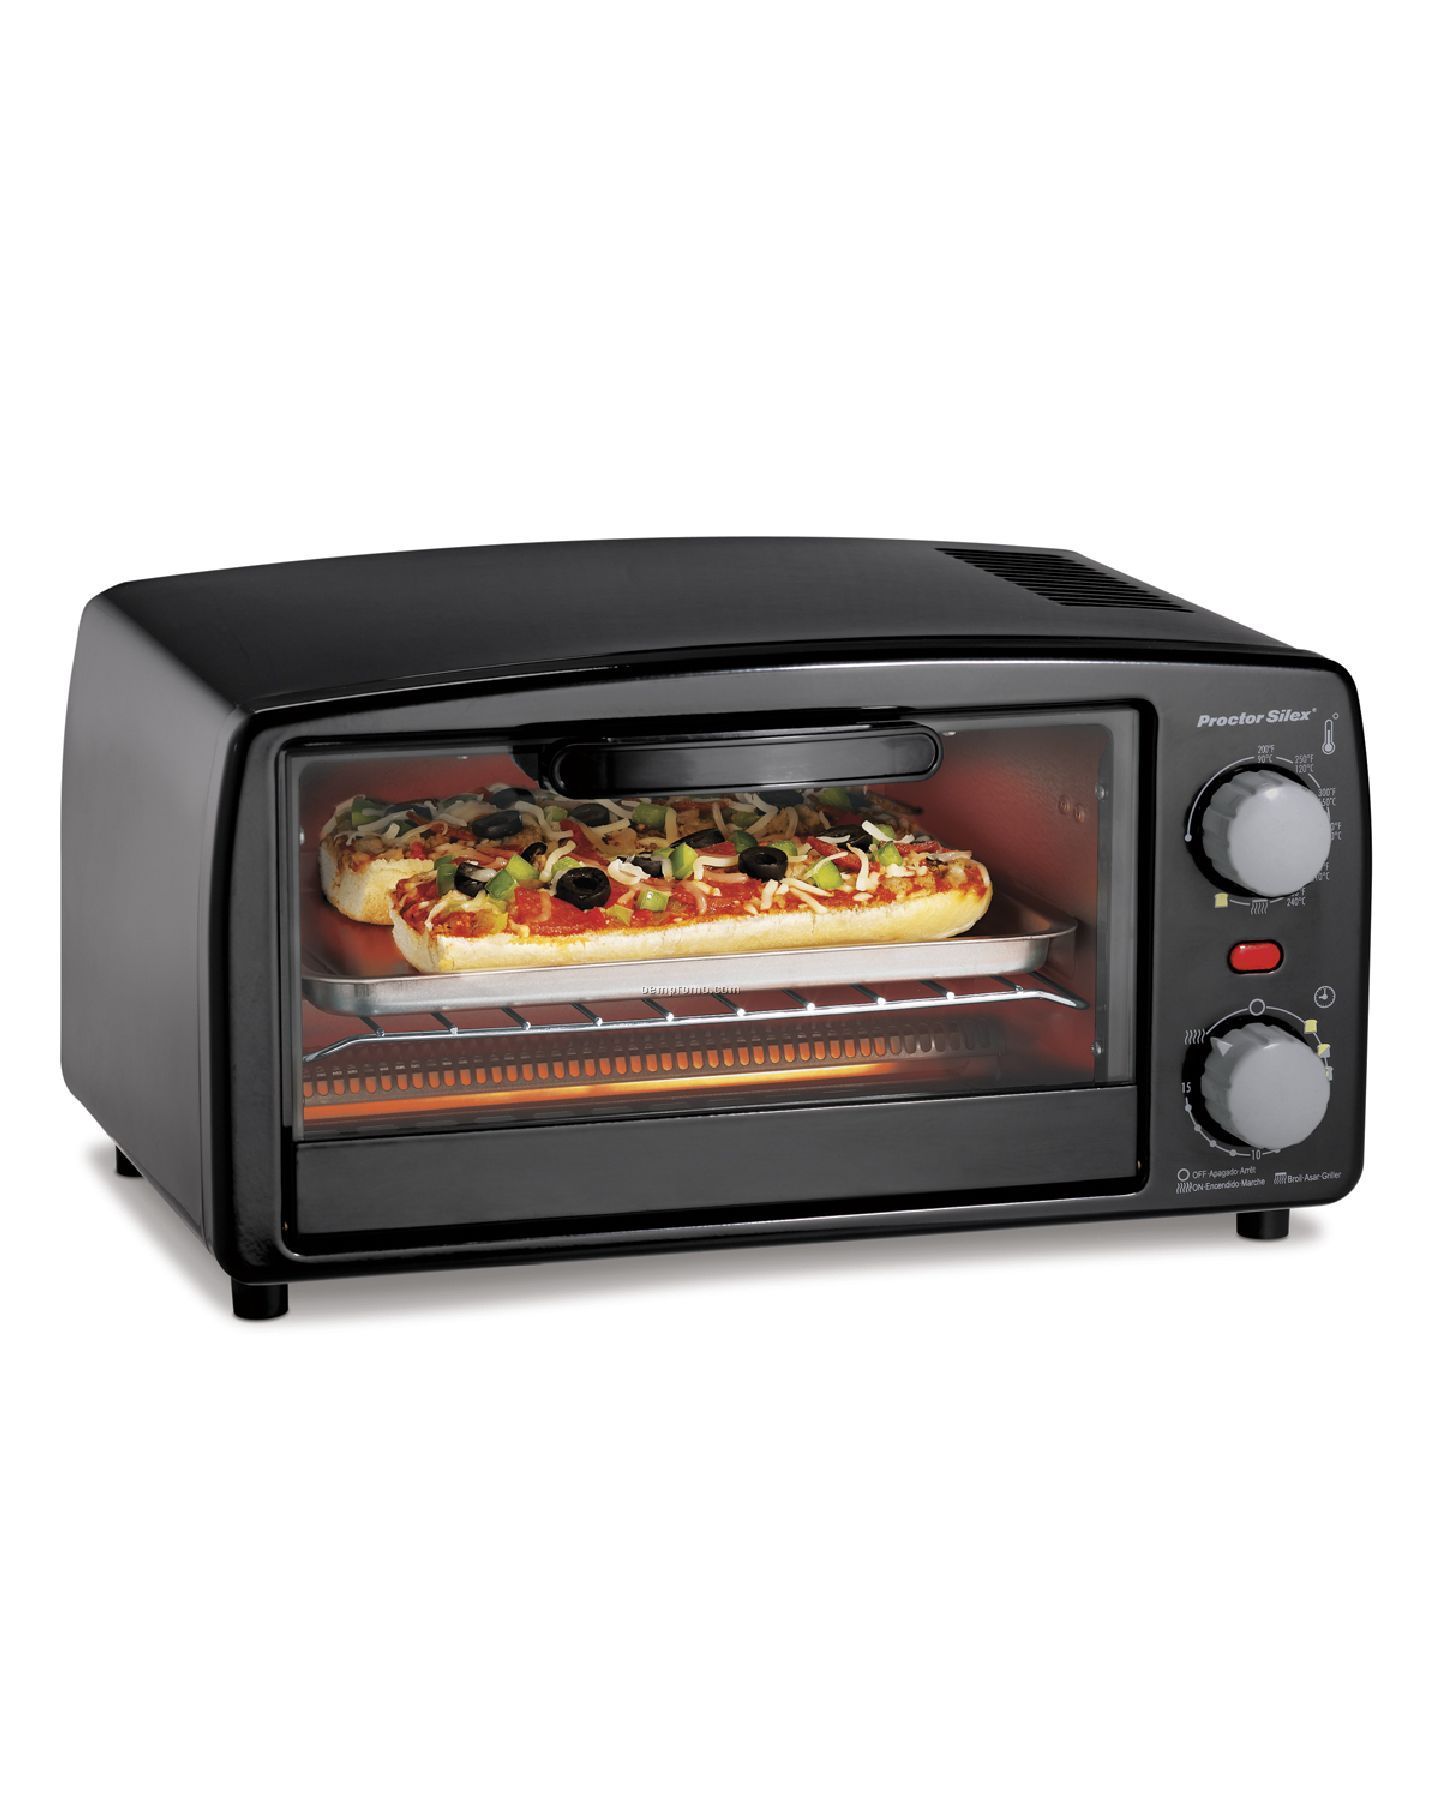 Proctor Silex - Ovens - 4-slice Toaster Oven - Black